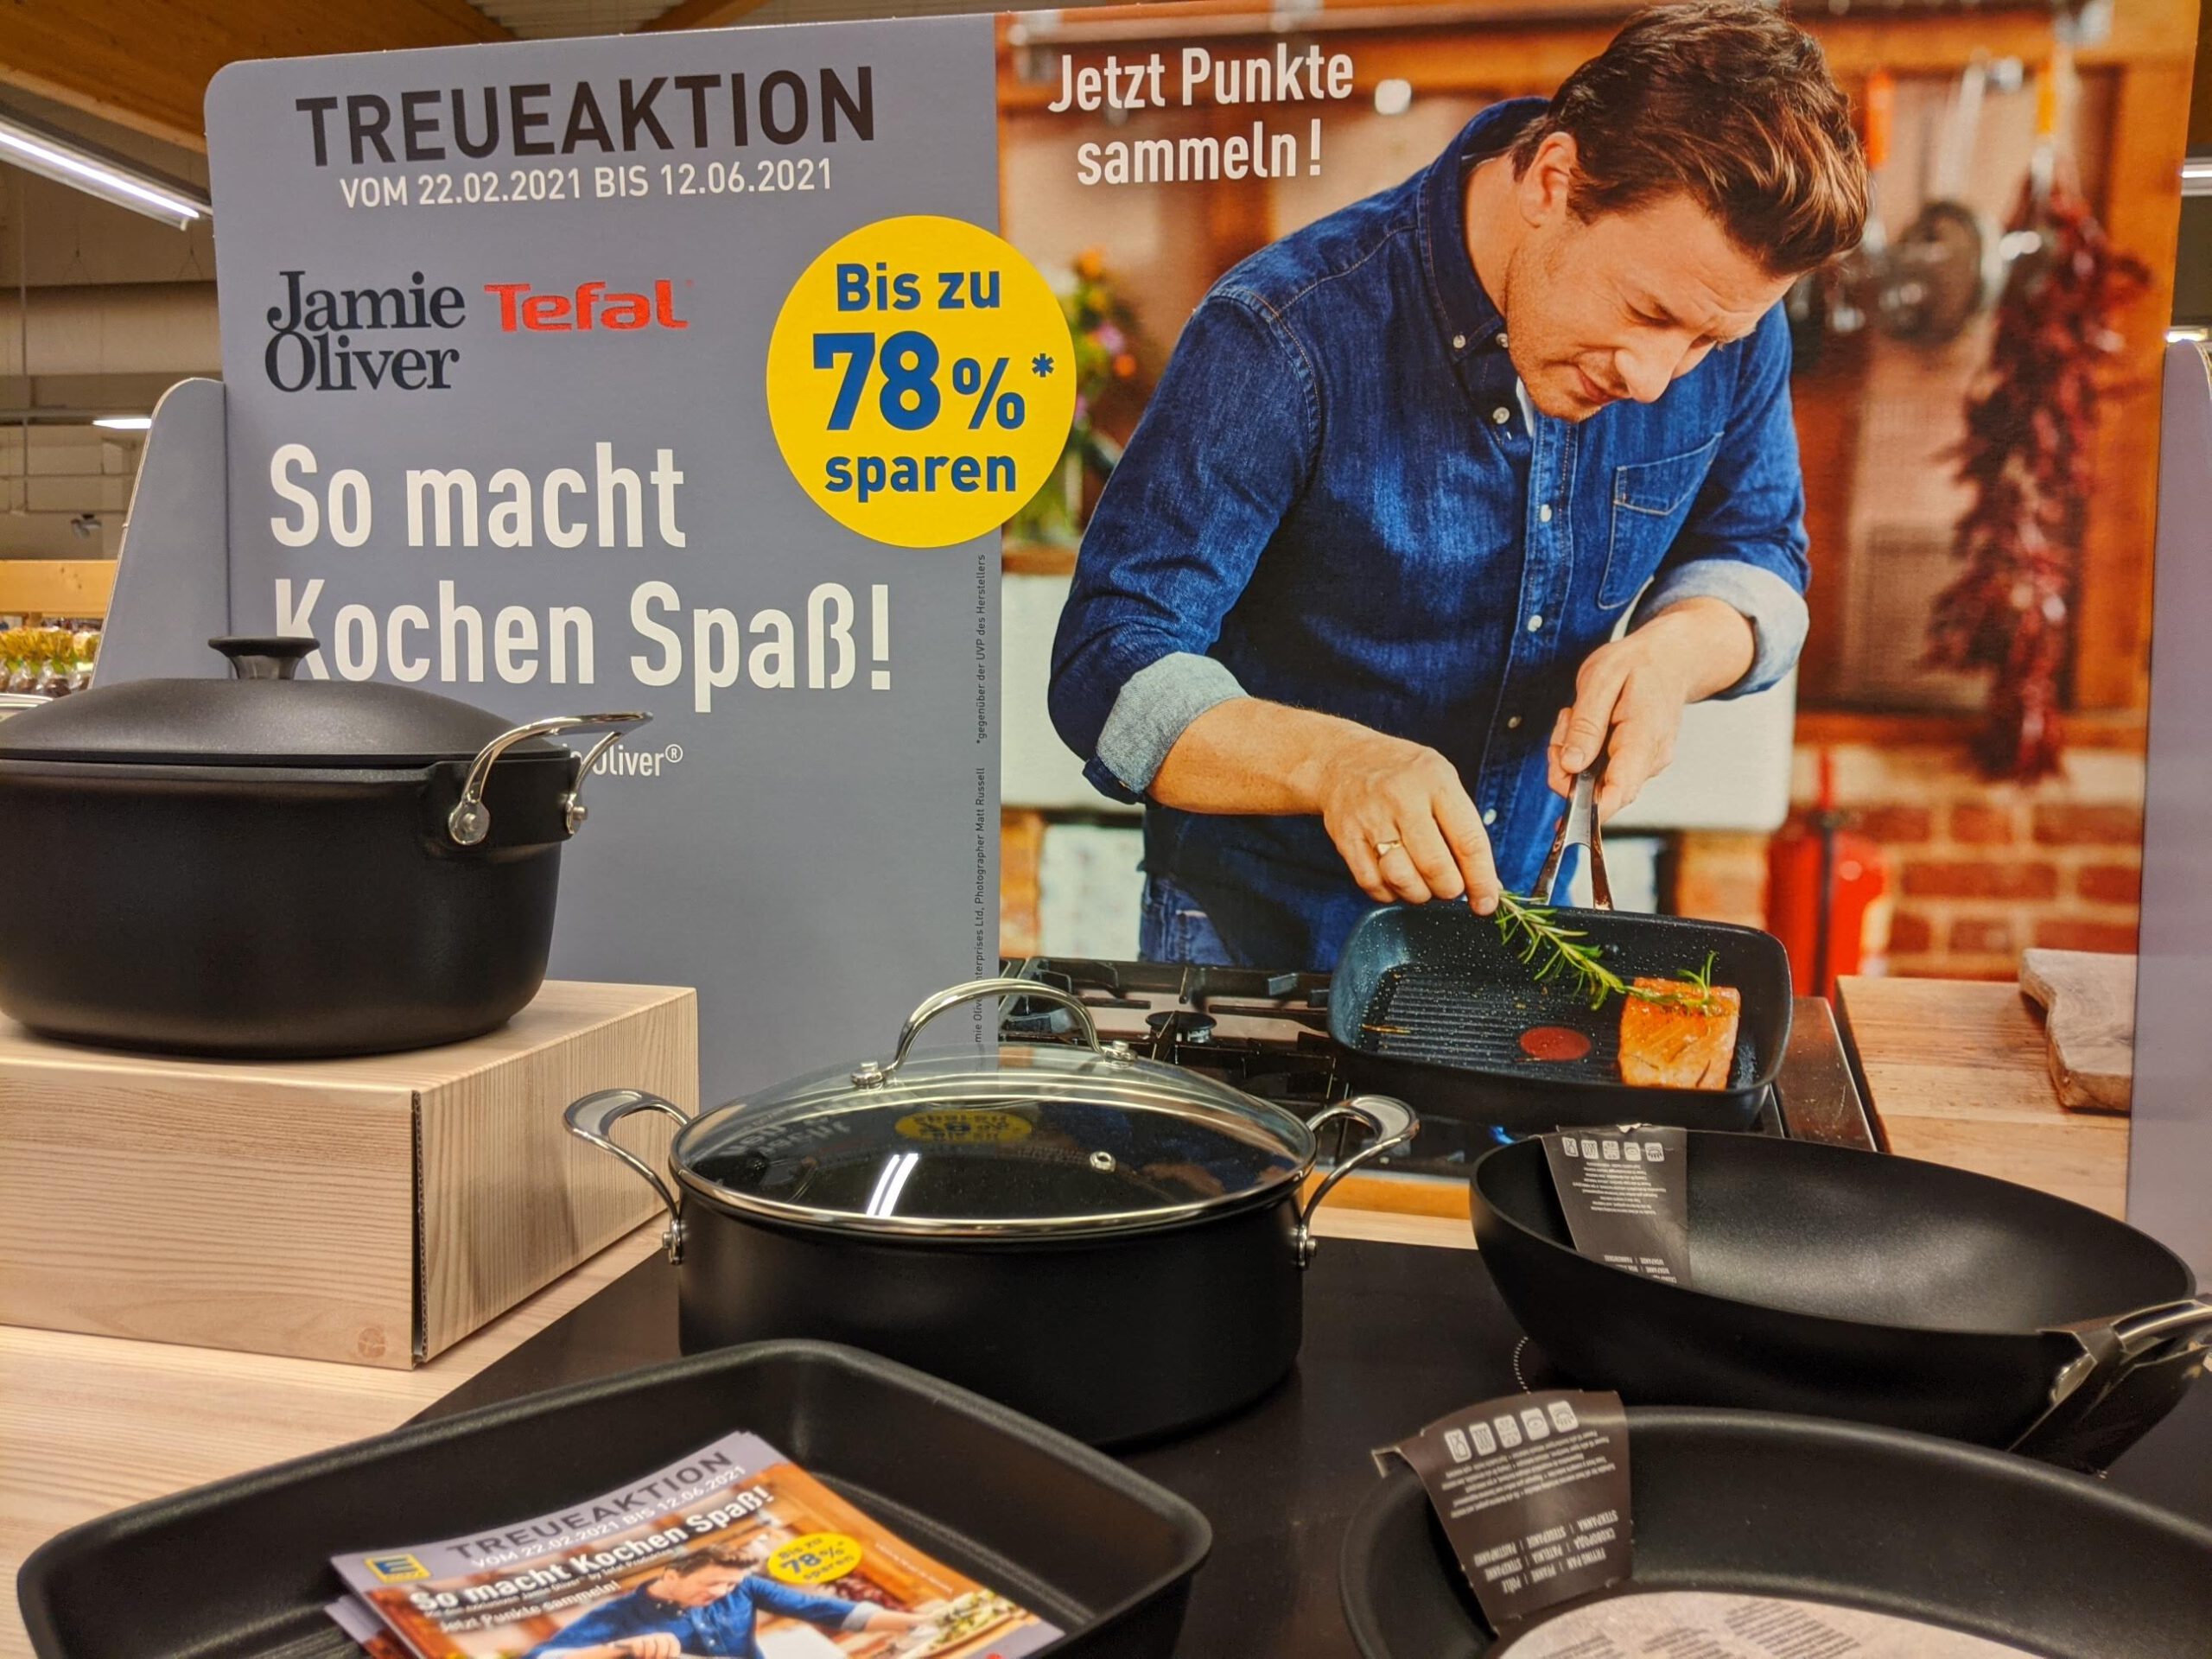 Edeka Marktkauf Treueaktion: Punkte sammeln, Pfannen von Jamie Oliver by Tefal mit Treue-Rabatt